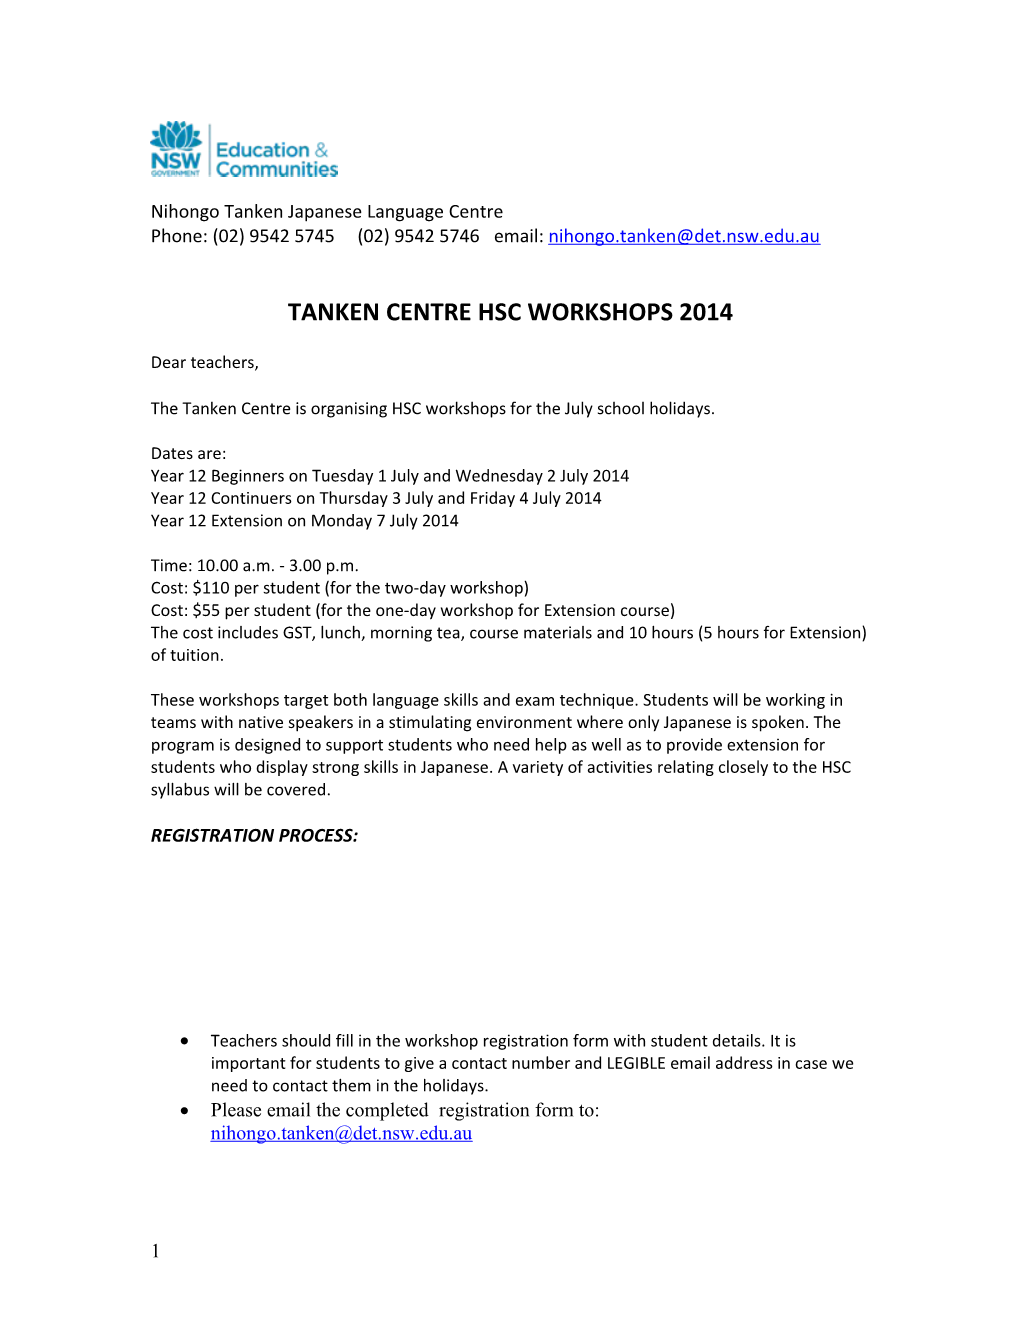 Tanken Centre Hsc Workshops 2014